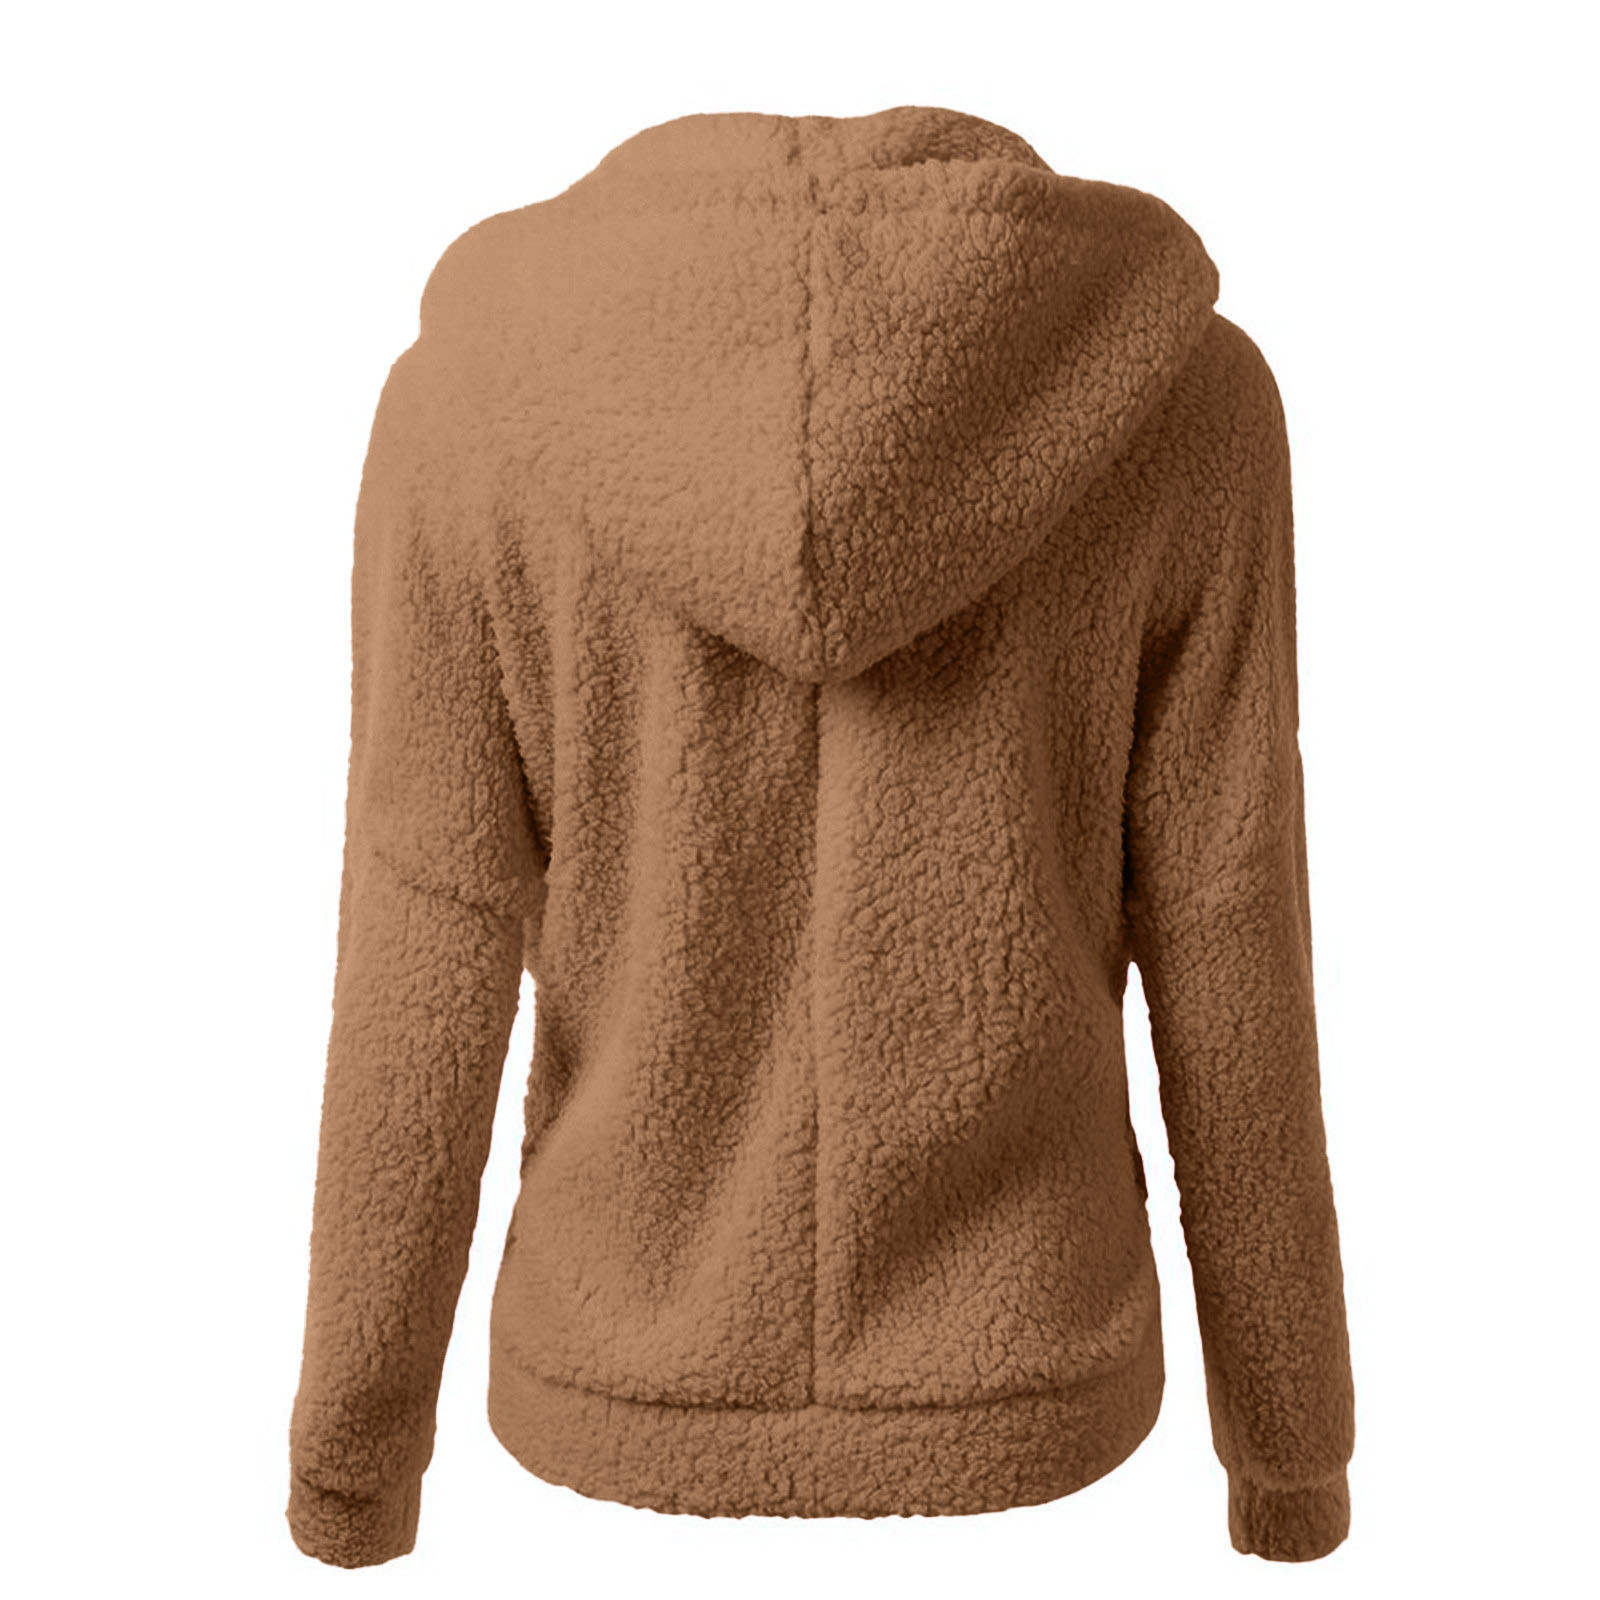 FAIWAD Fleece Jackets for Women Plus Size Hoodie Zip Up Sweatshirt ...